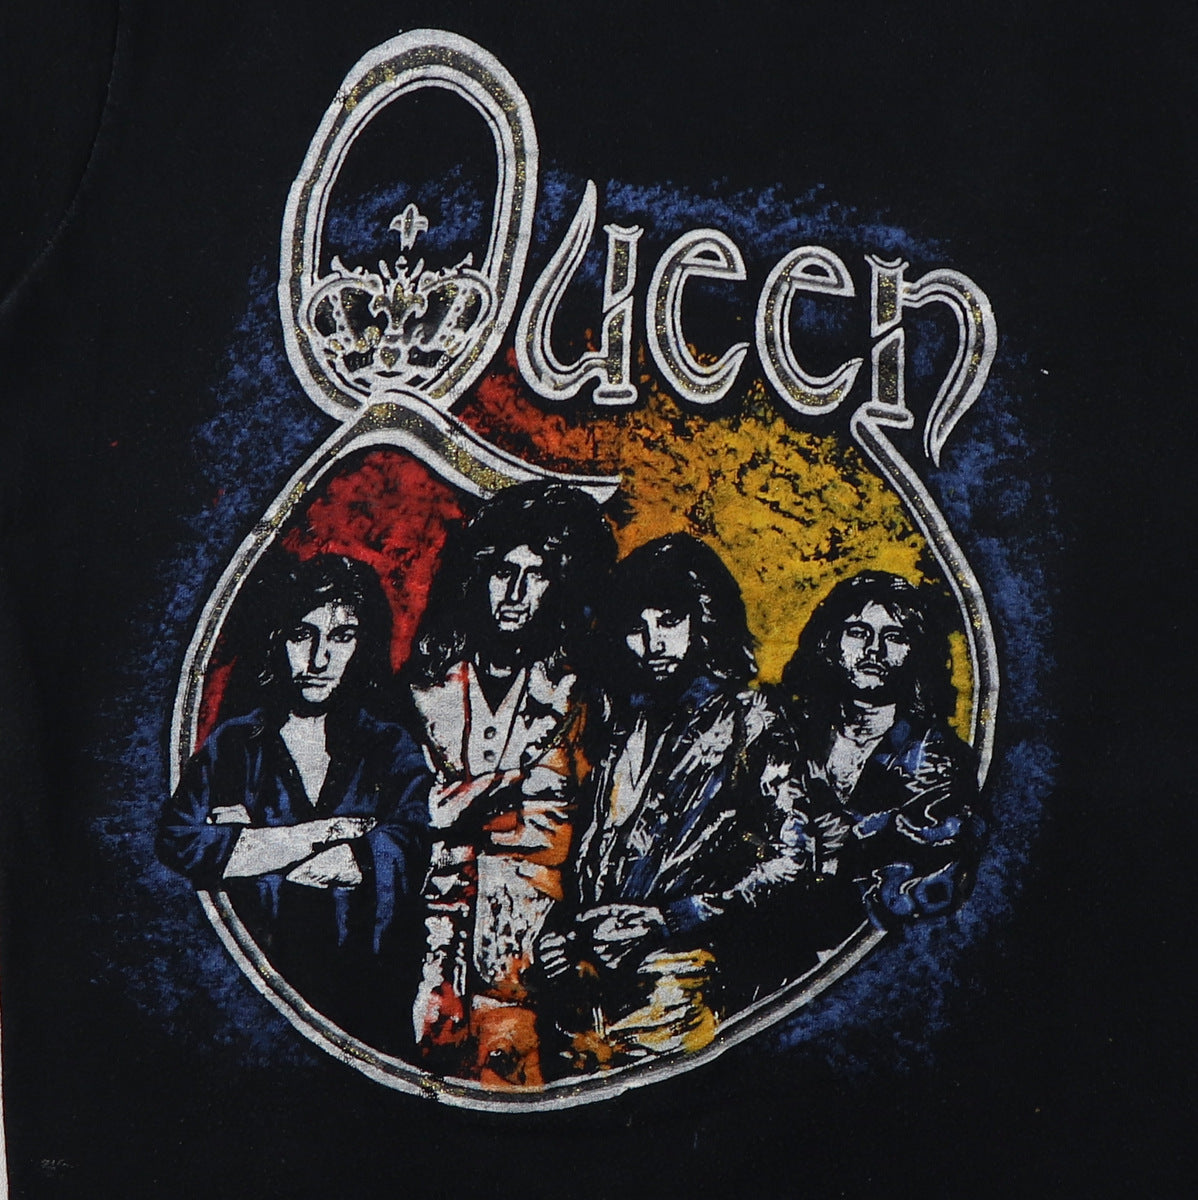 1970s Queen Tour Shirt